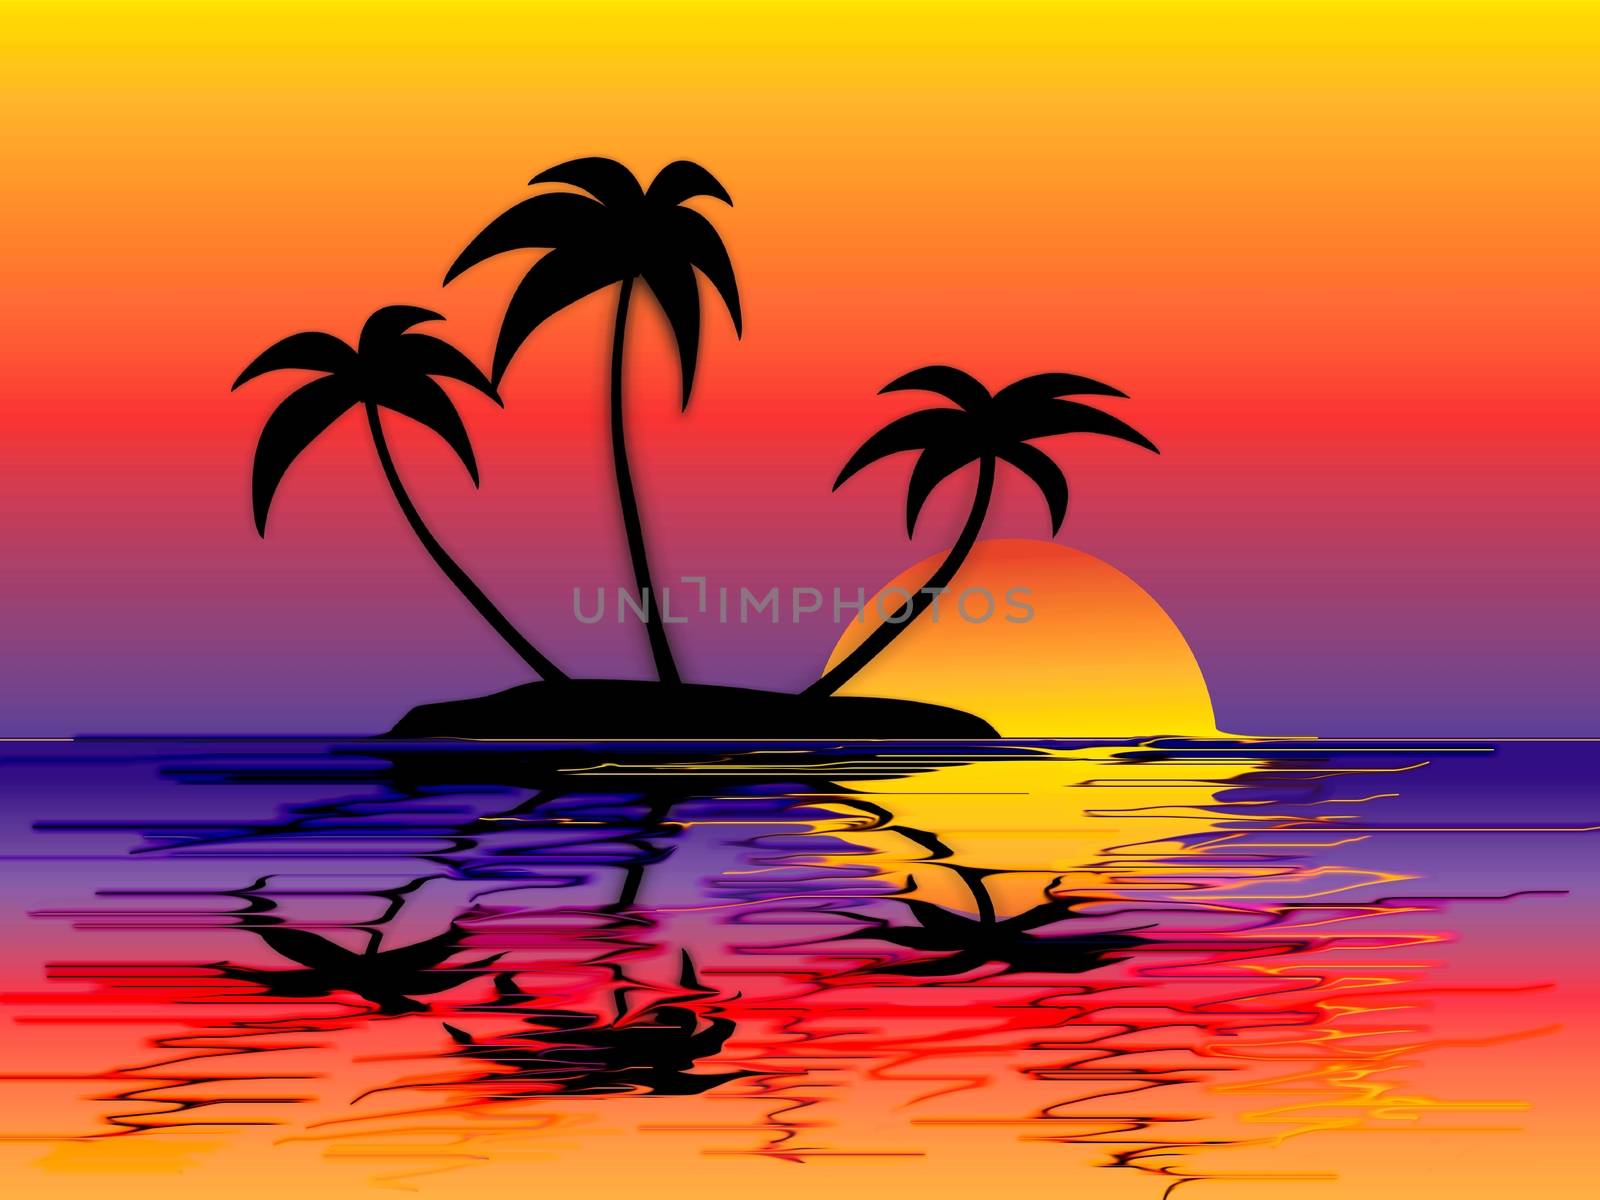 Sonnenuntergang auf einer kleinen Insel Grafik
